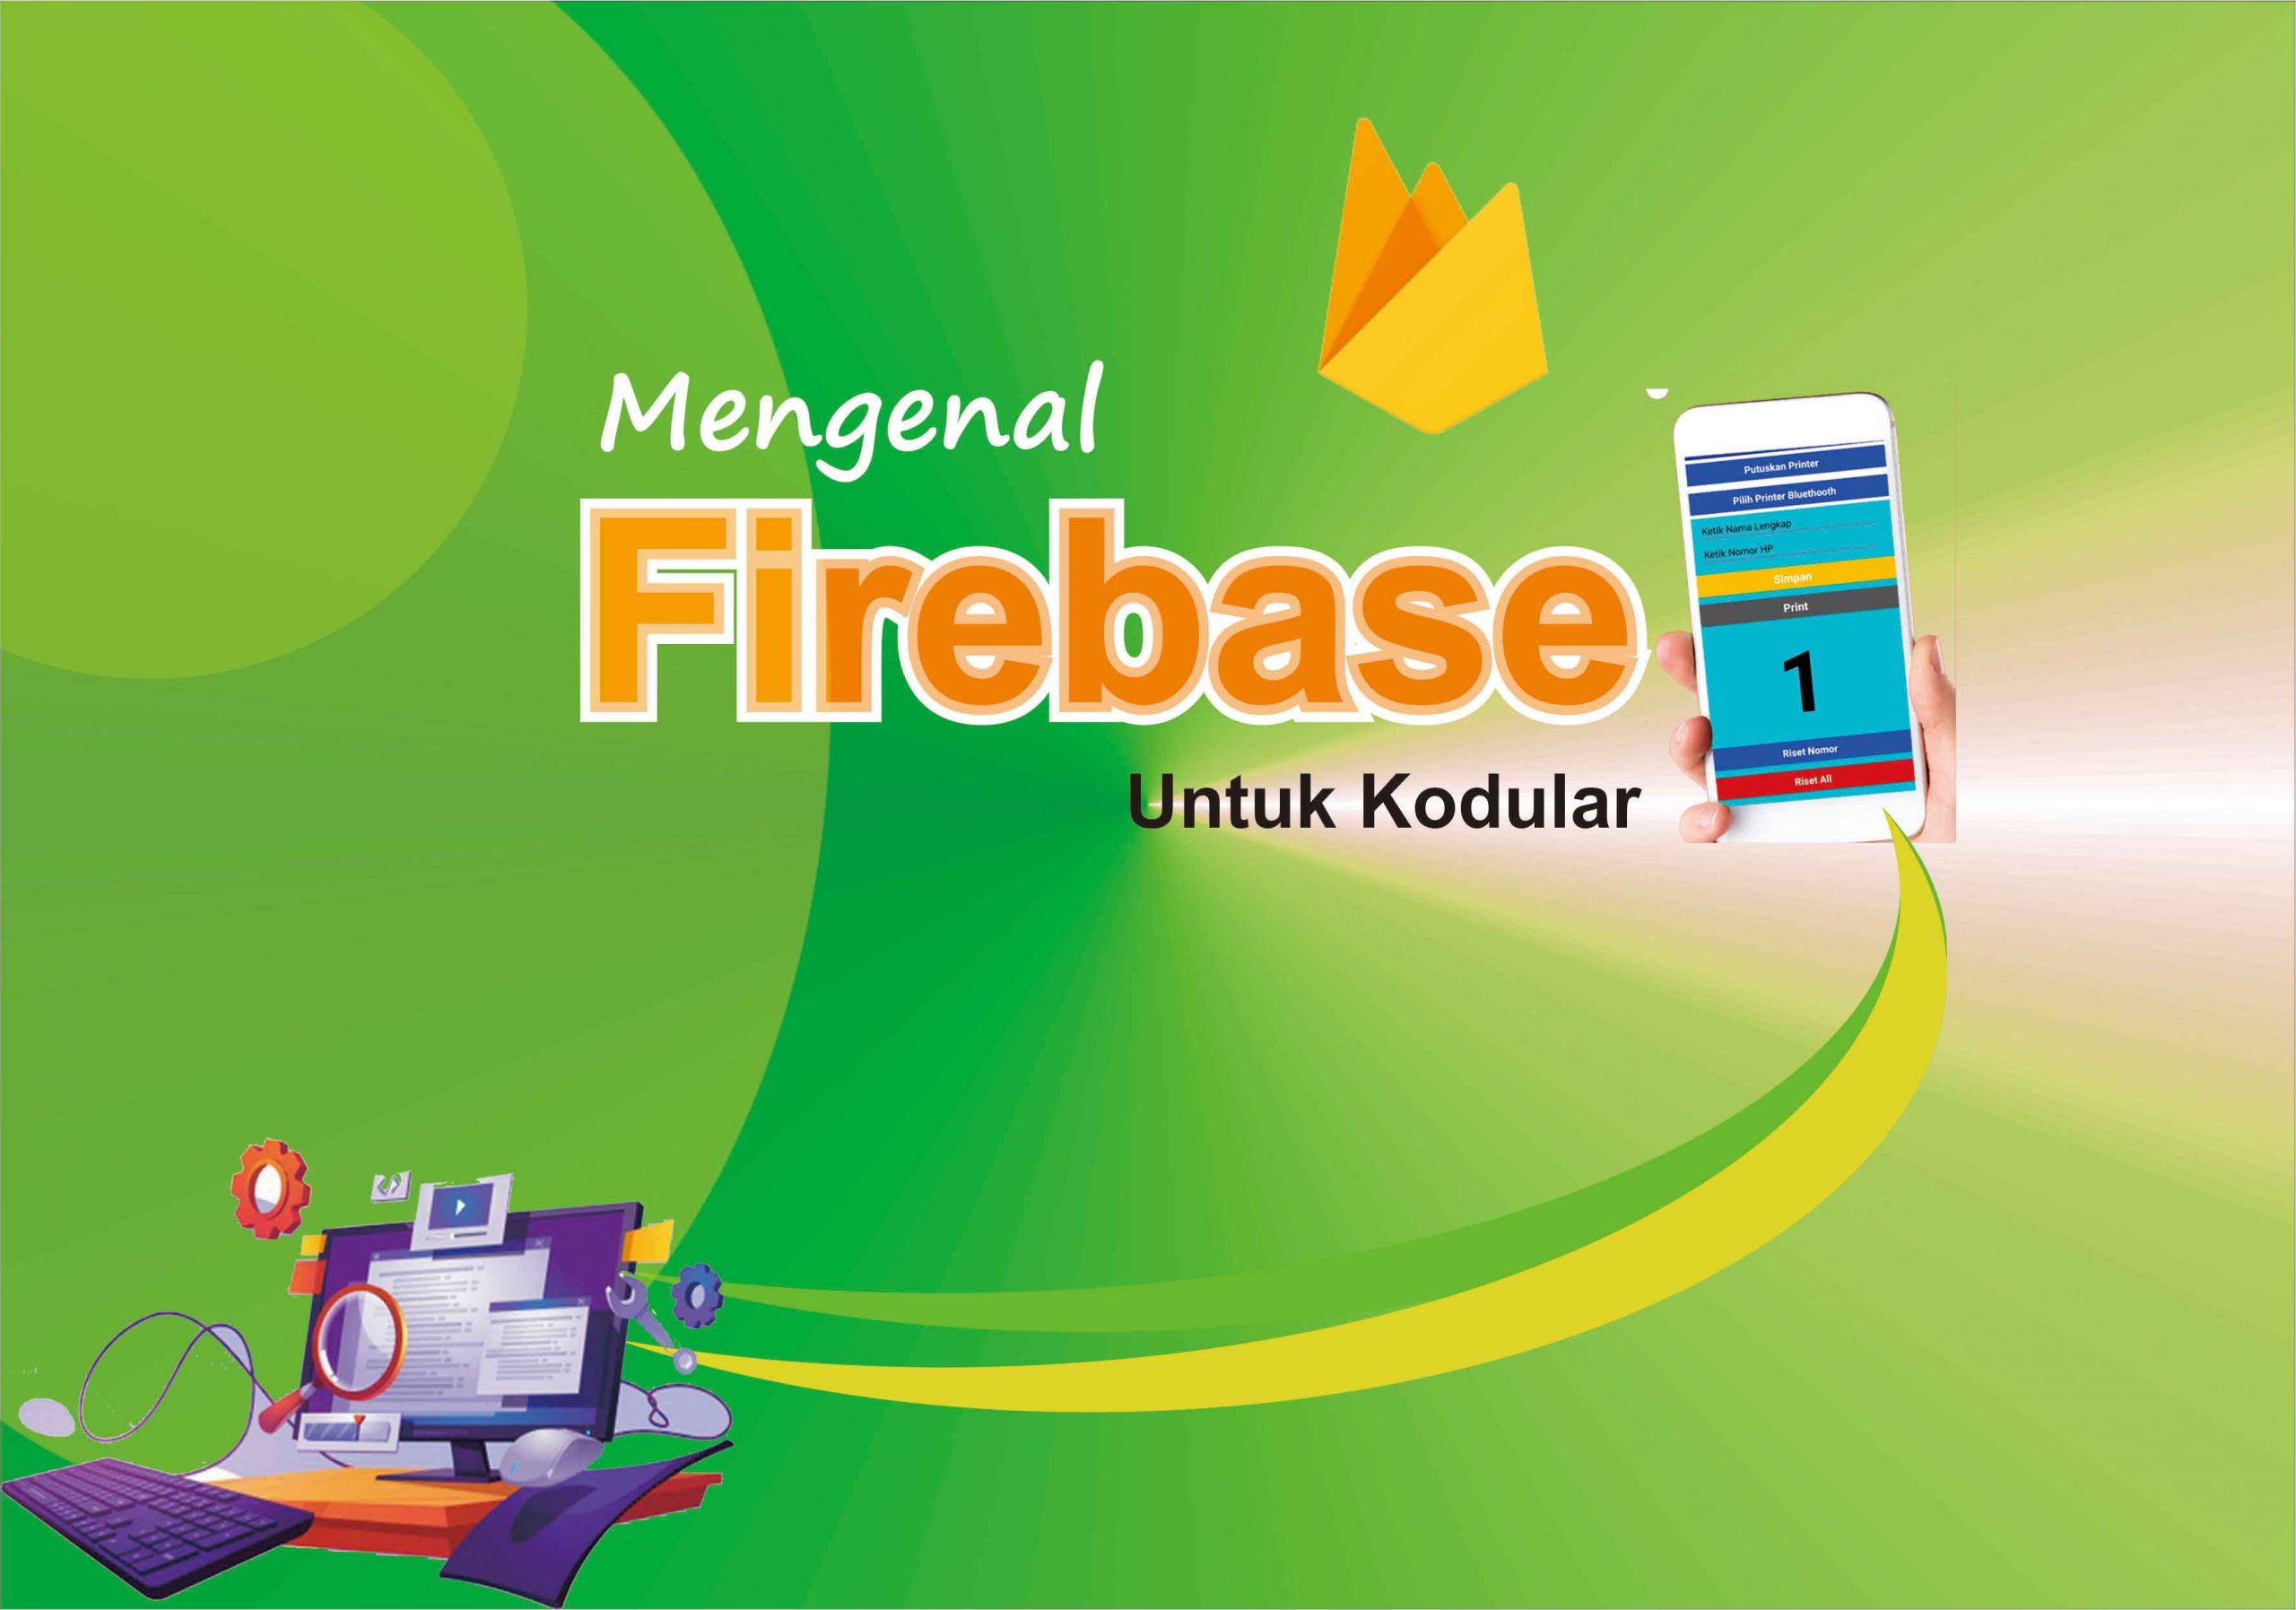 Mengenal Firebase Untuk Kodular